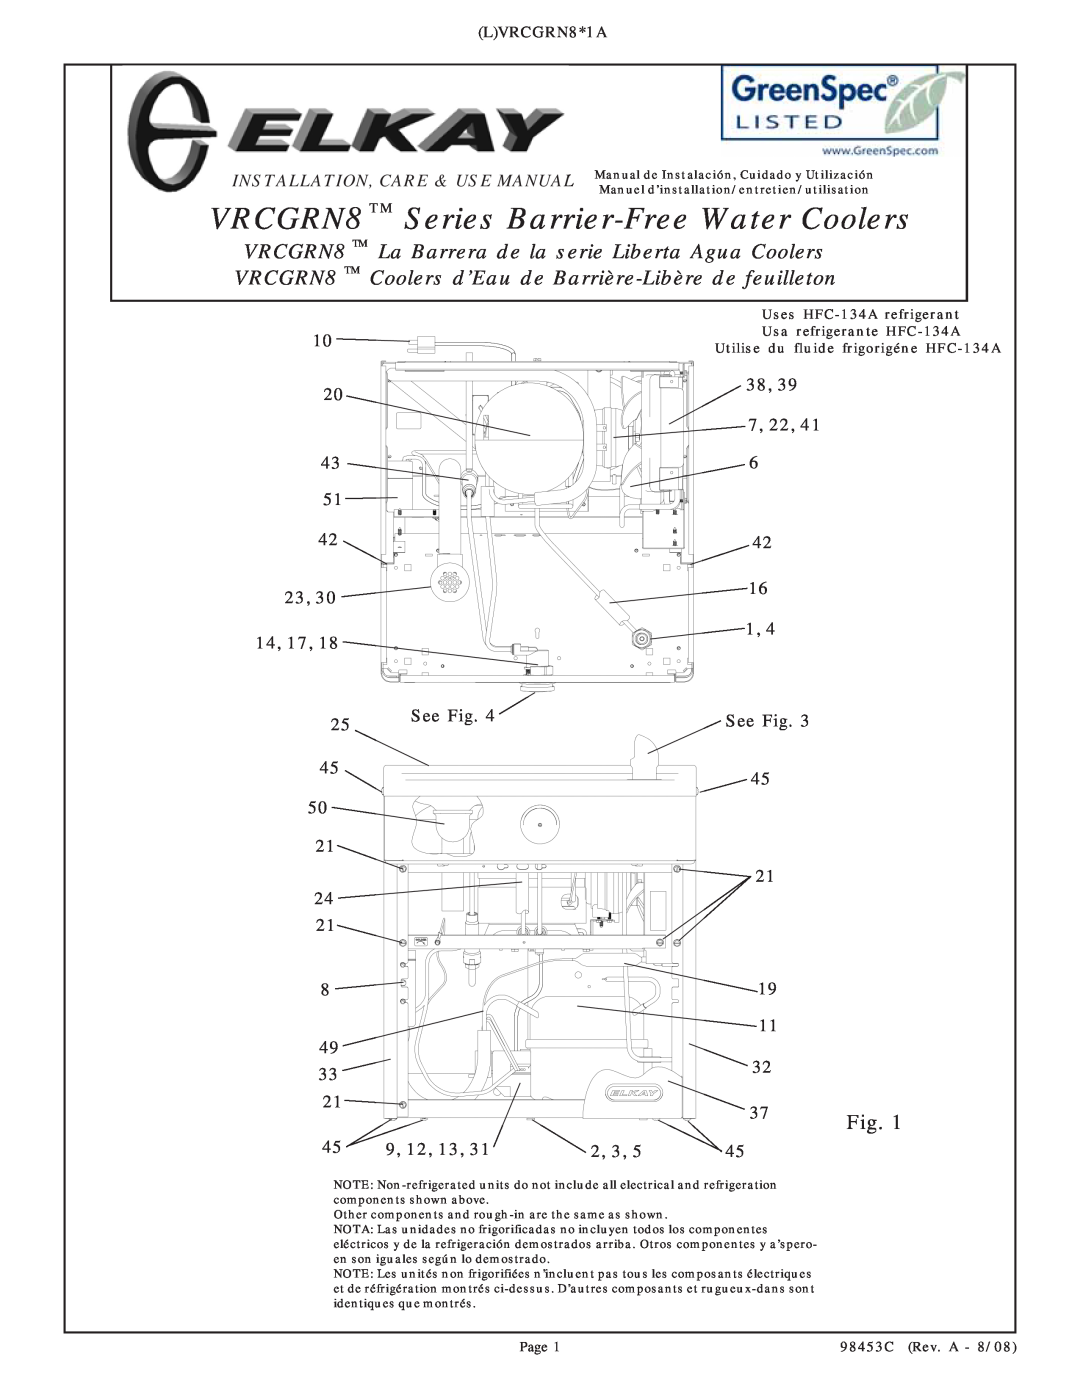 Elkay VRCGRN8 Series manual 23, 30 14, 38, 39 7, 22, 16 1 See Fig, LVRCGRN8*1A, Utilise du fluide frigorigéne HFC-134A 